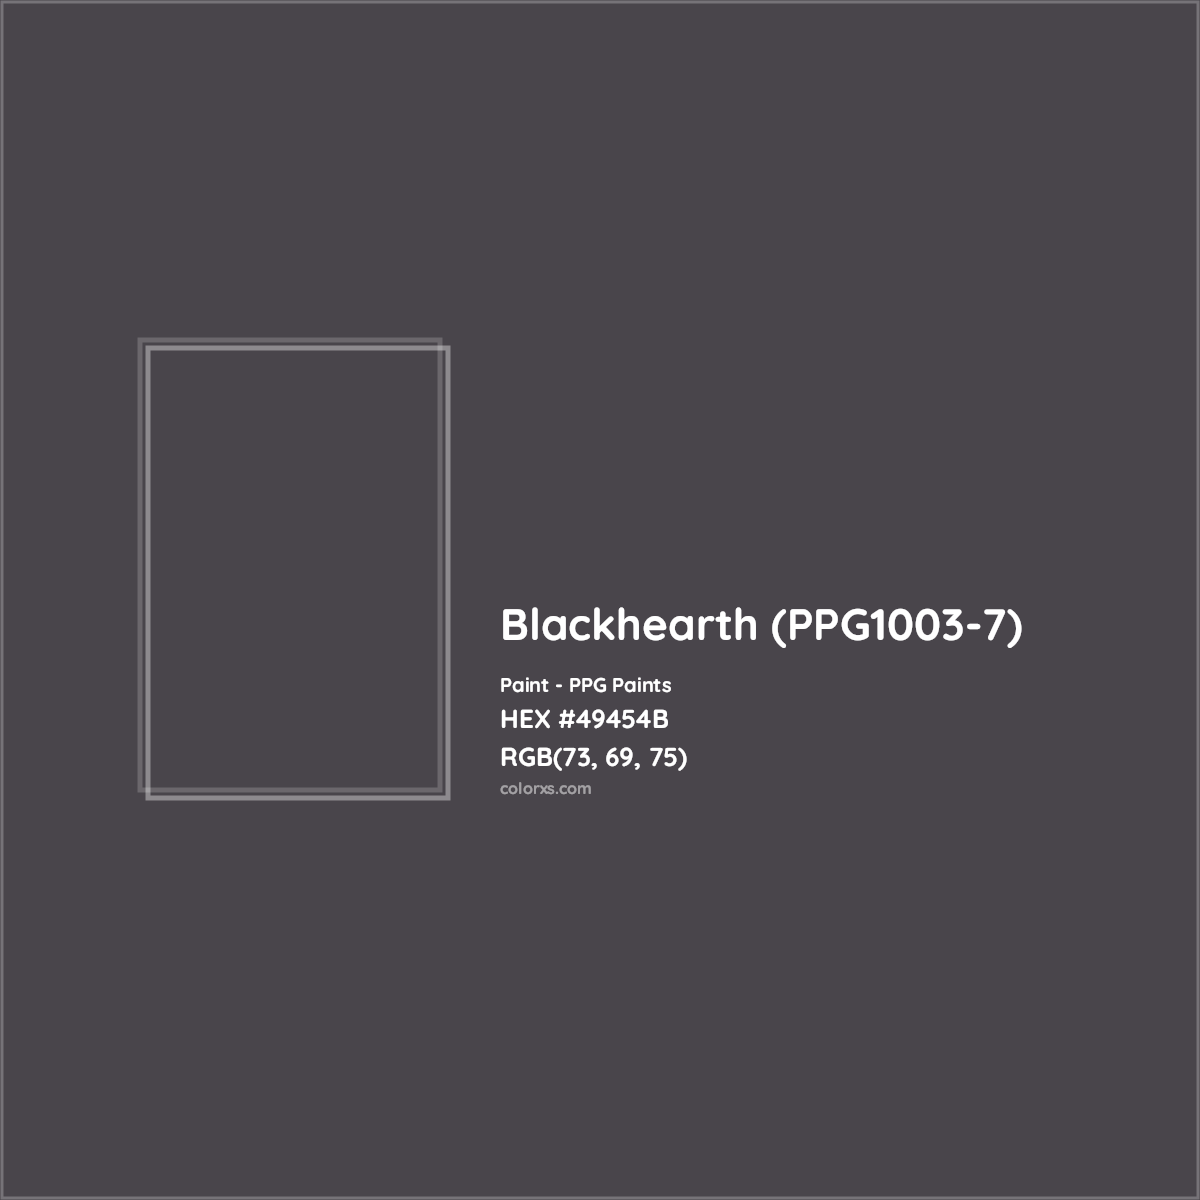 HEX #49454B Blackhearth (PPG1003-7) Paint PPG Paints - Color Code